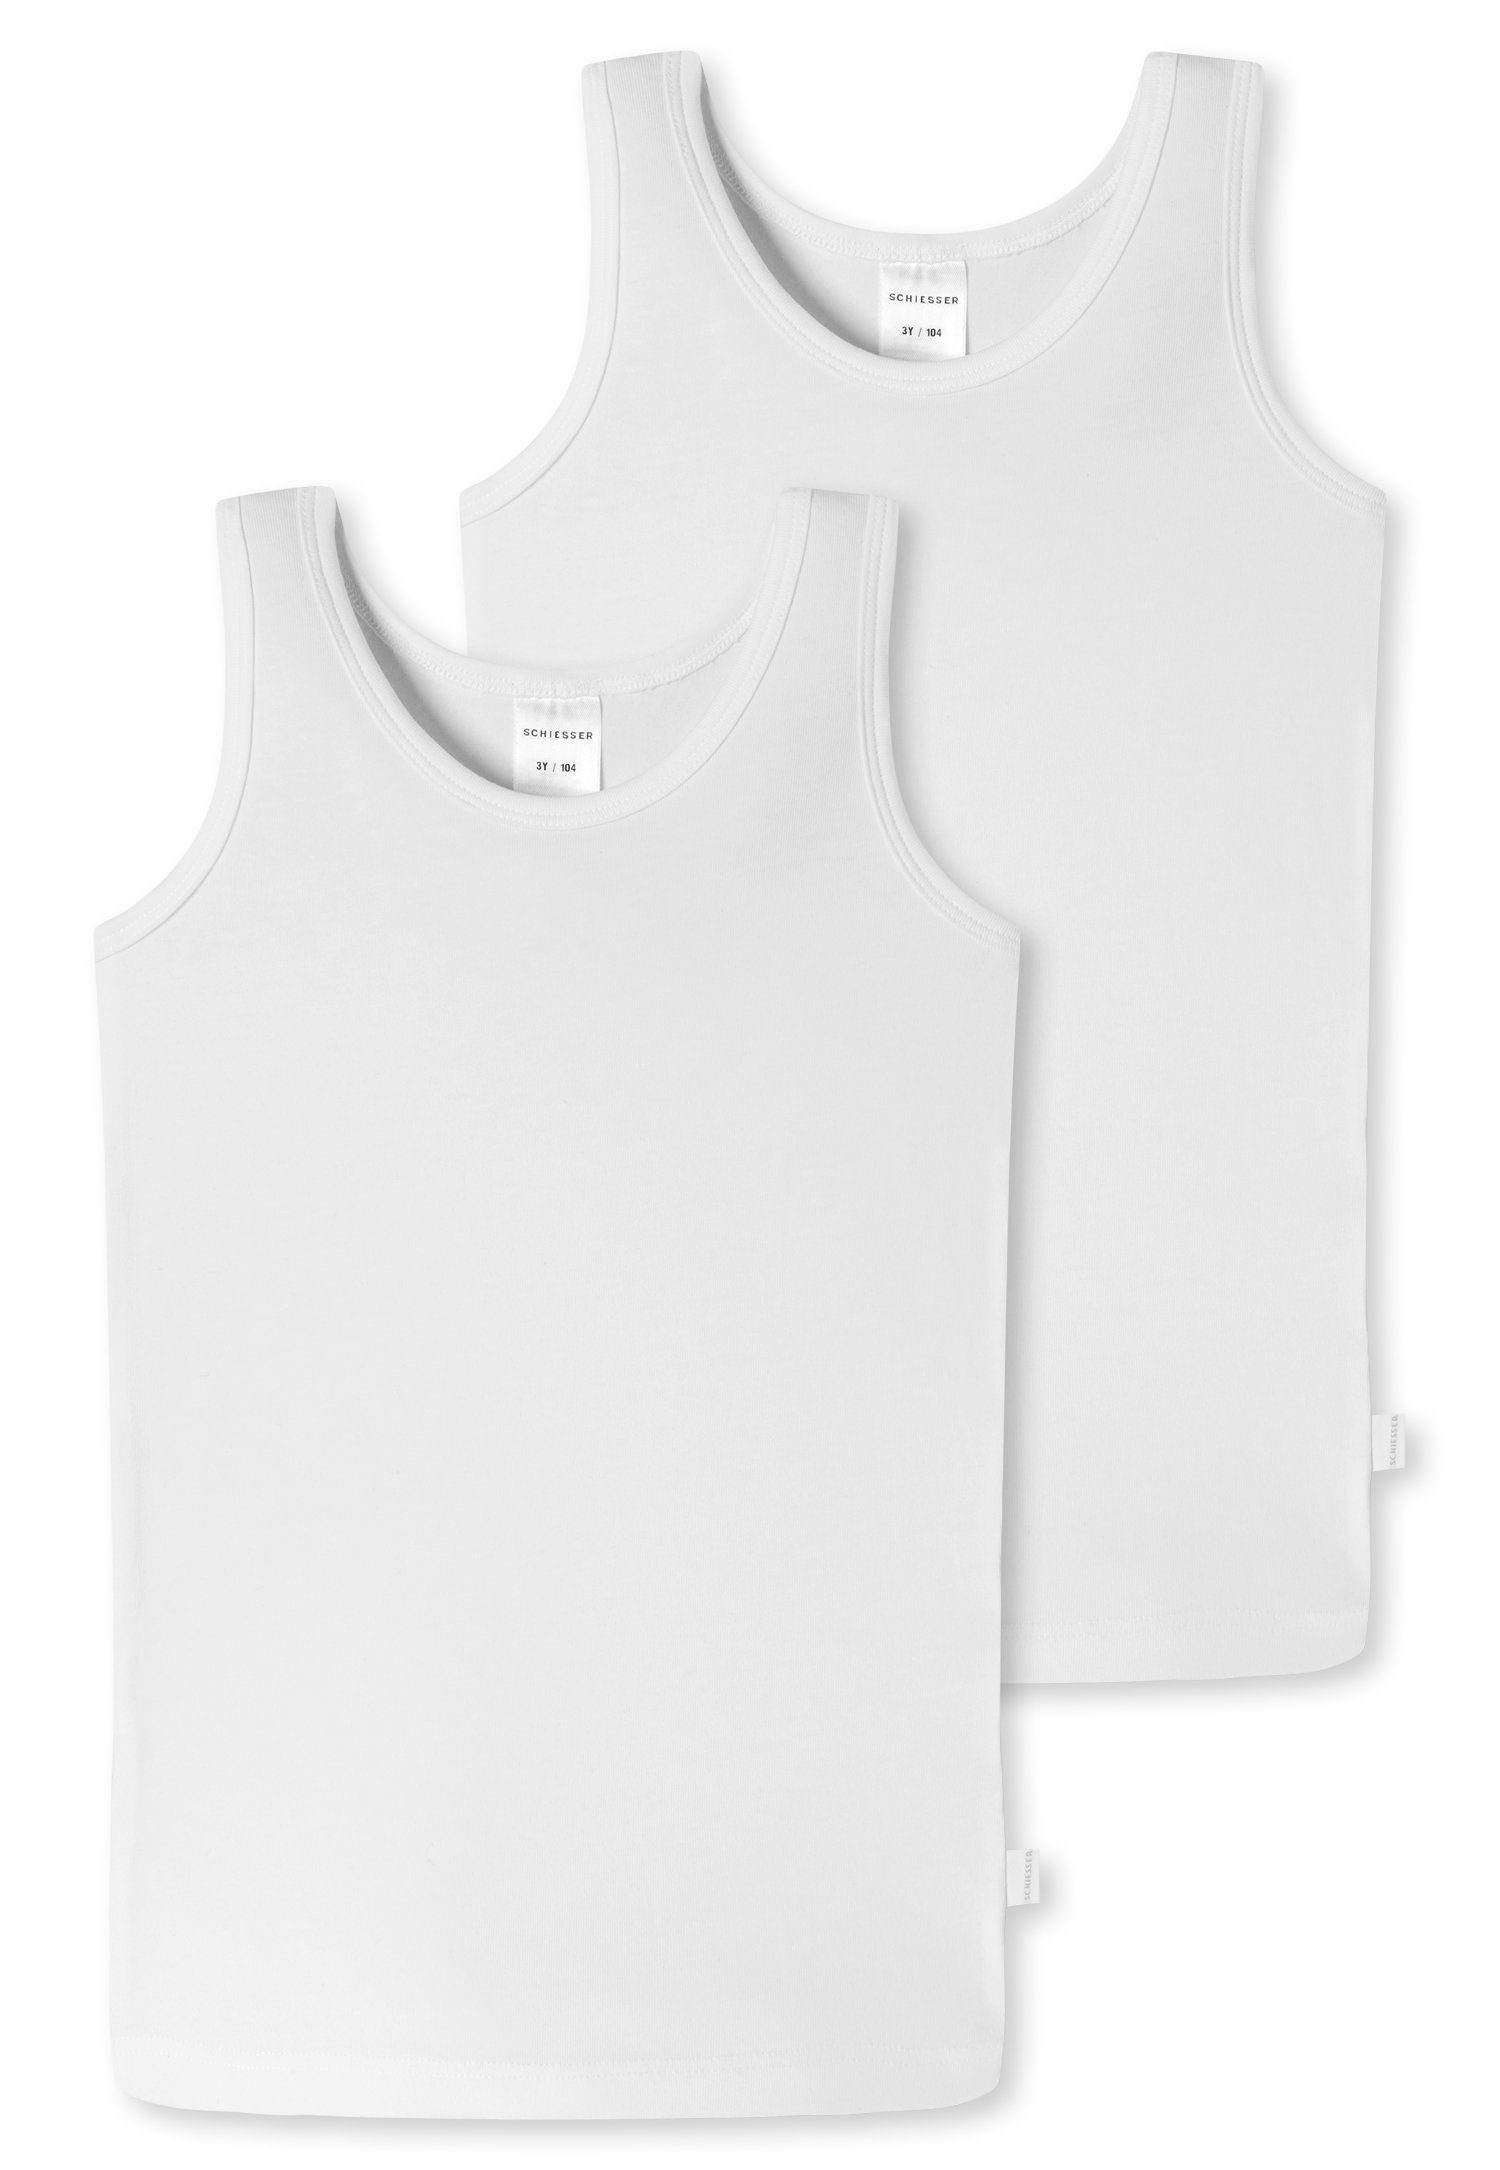 Schiesser Unterhemd (2er-Pack) mit Markenlabel weiß